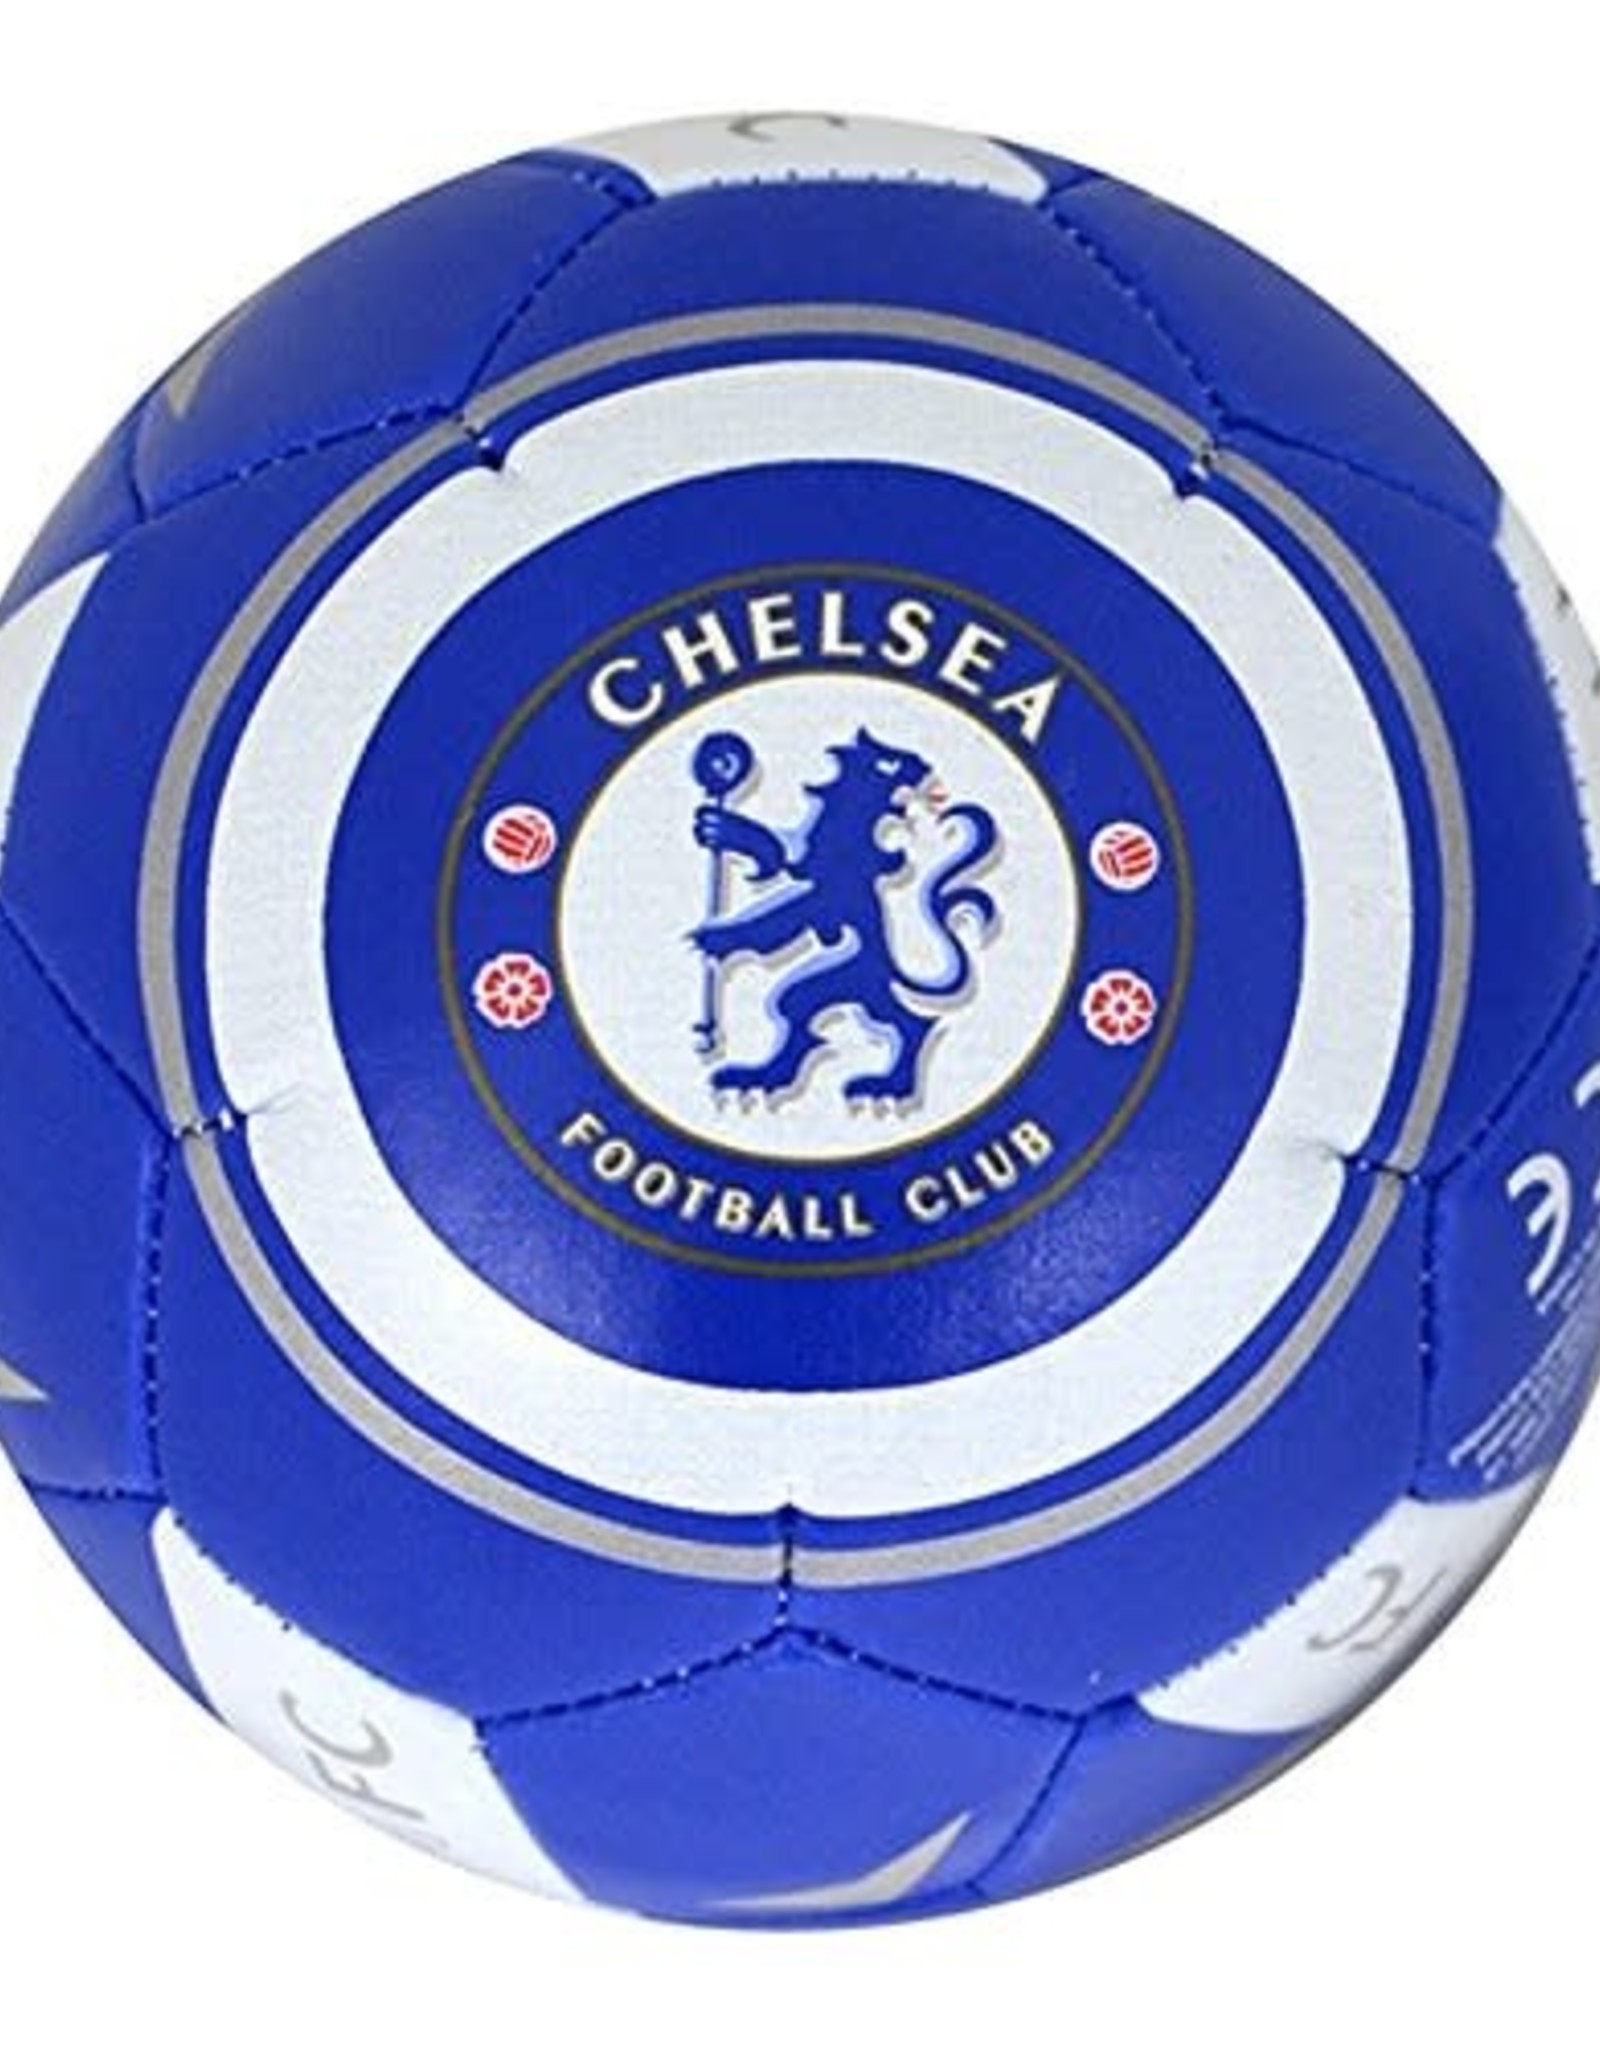 Chelsea Soccer Ball